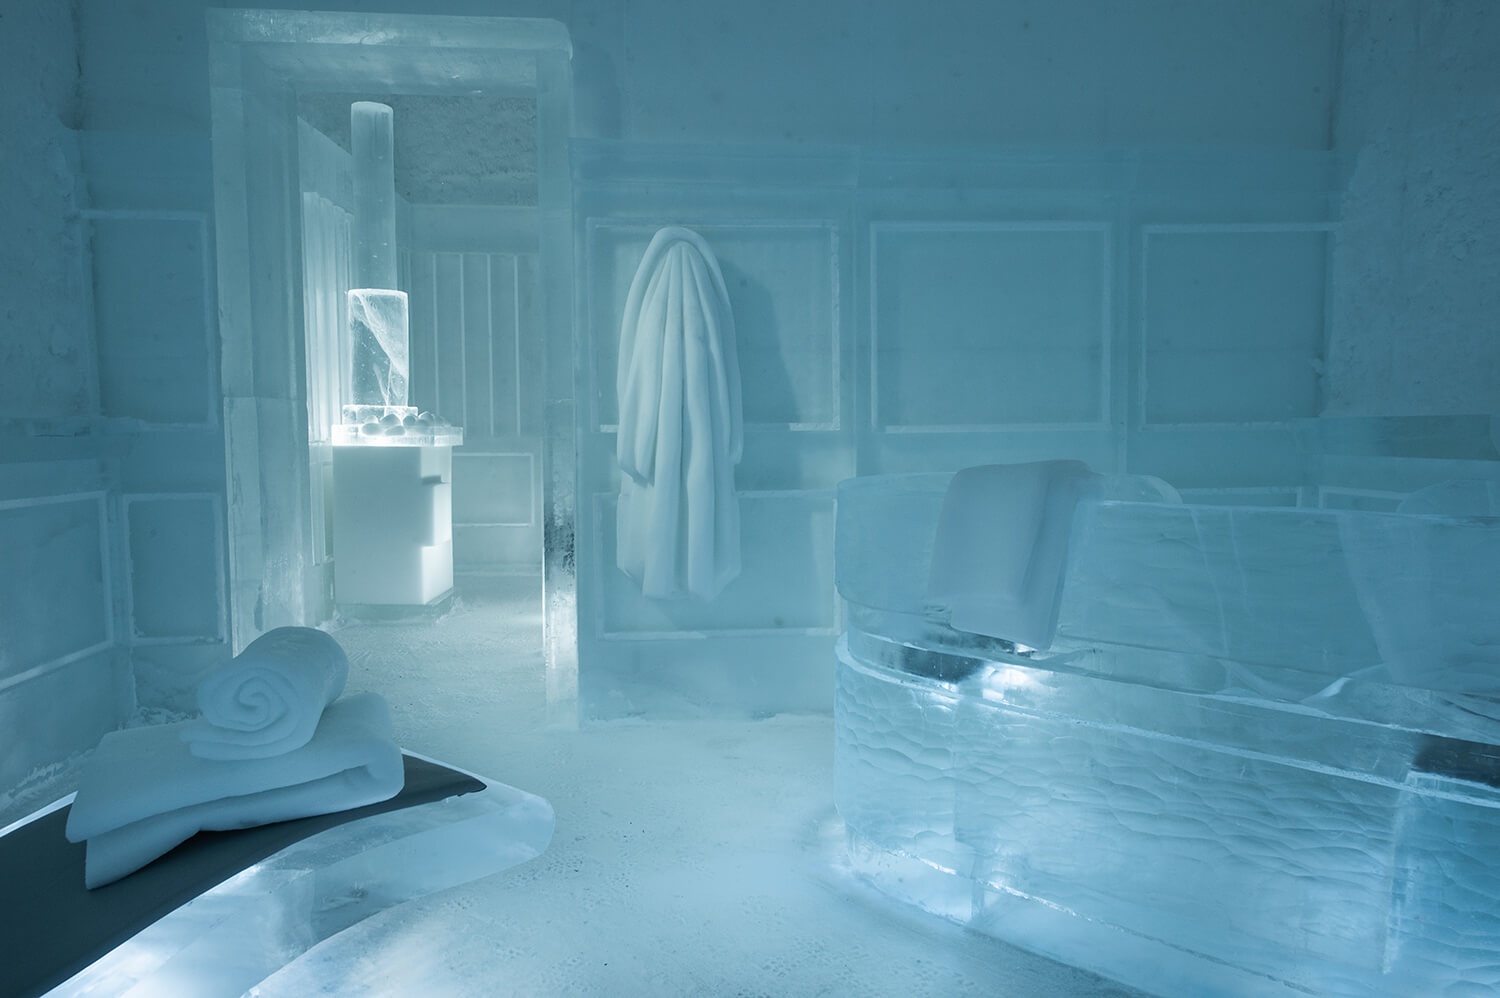 Khám phá vẻ đẹp độc nhất của khách sạn băng tuyết ở Thụy Điển - 4